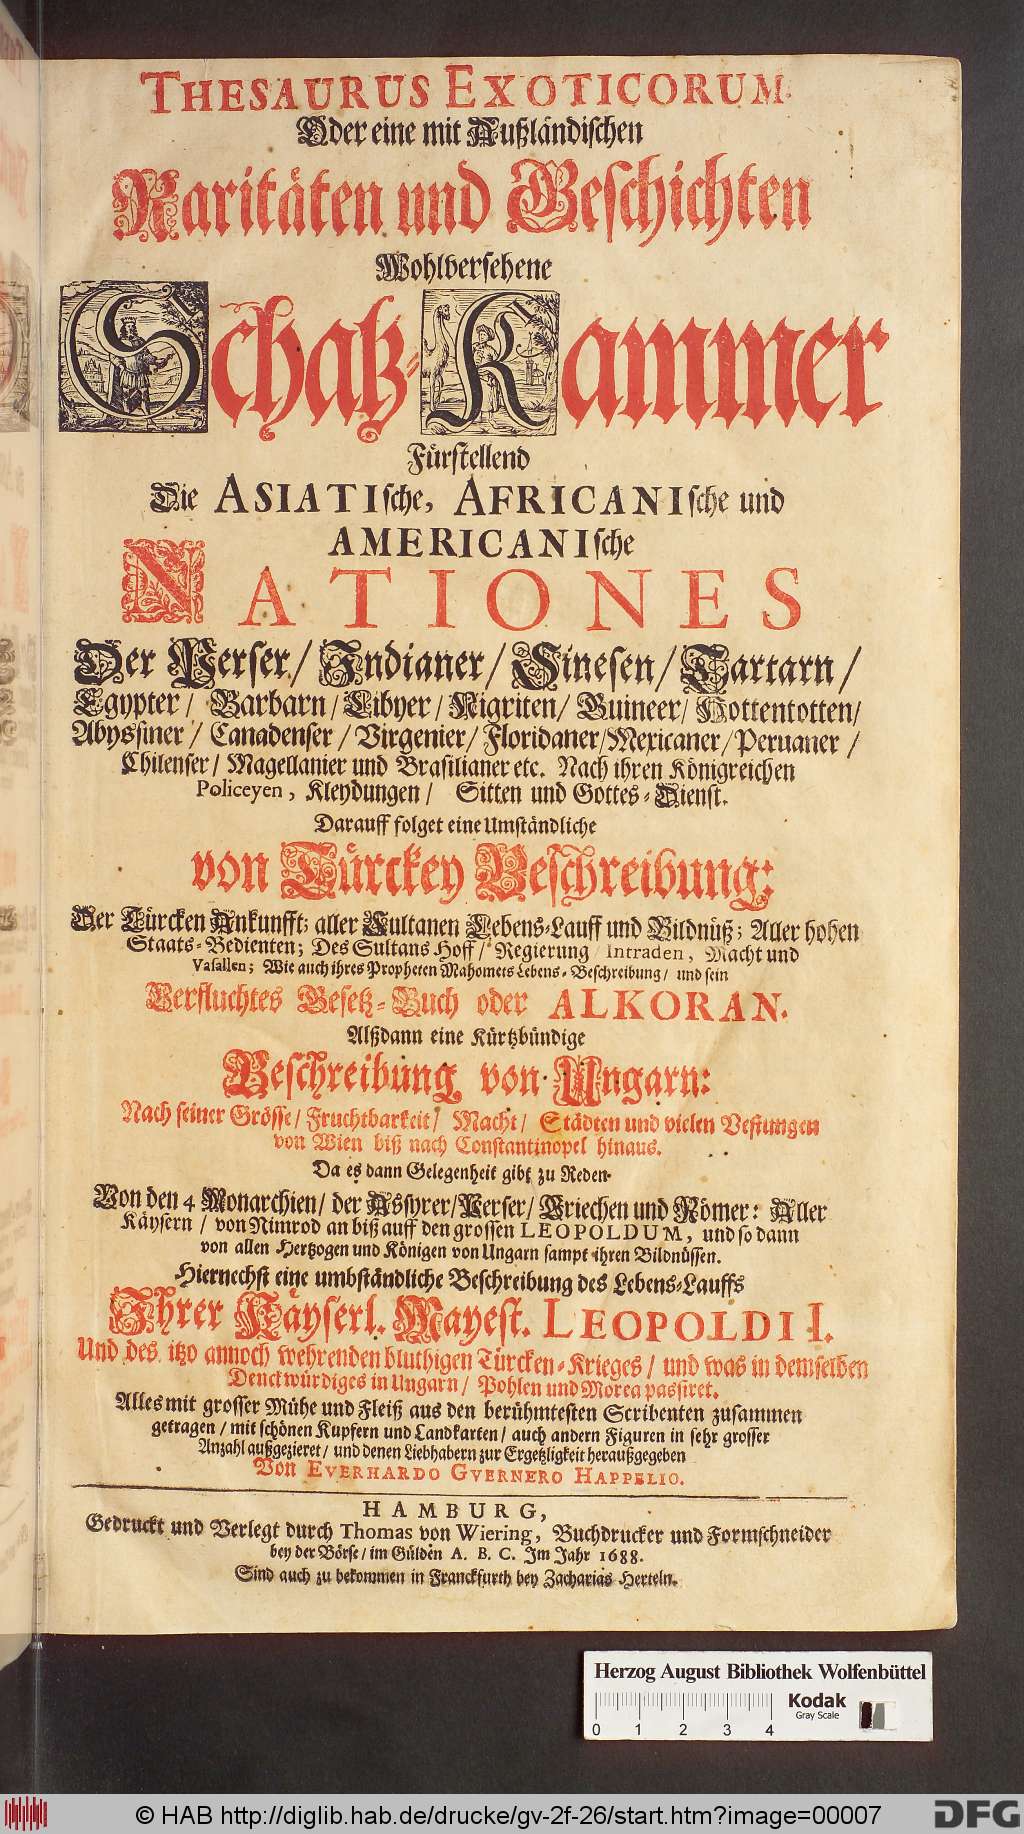 Happtel: Thesaurus Exoticorum (1688)